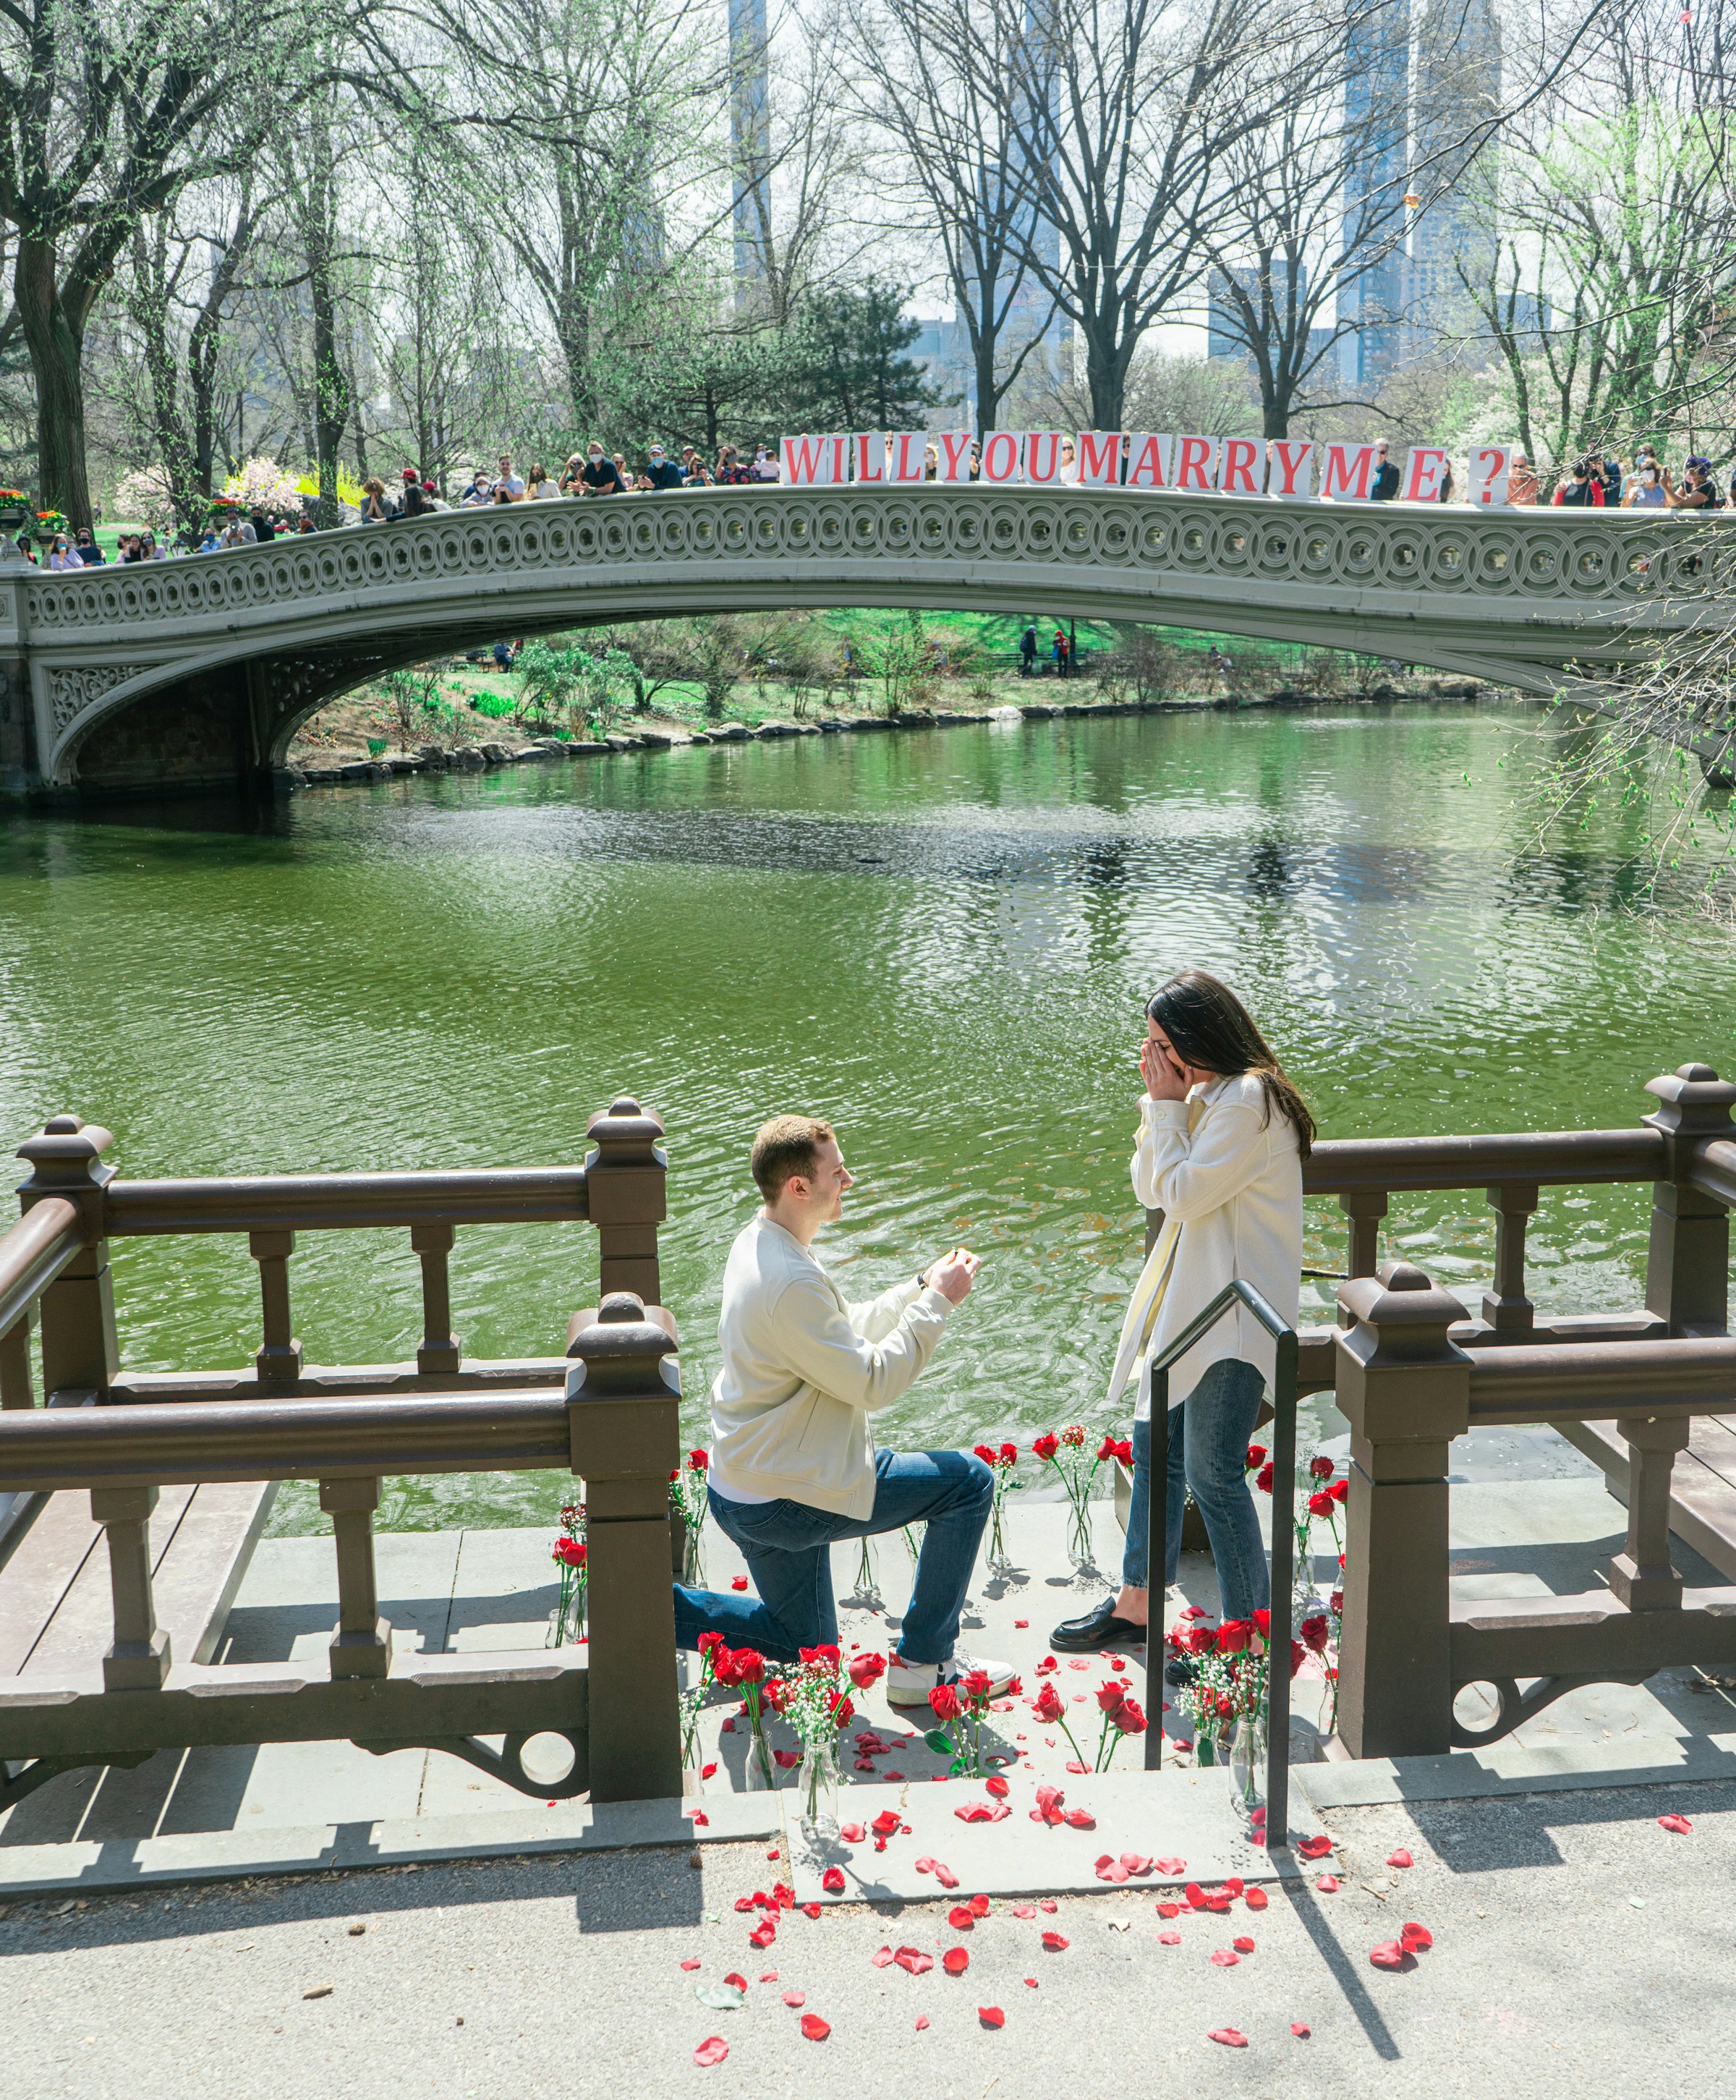 Un homme demande une femme en mariage près d'un lac | Source : Unsplash